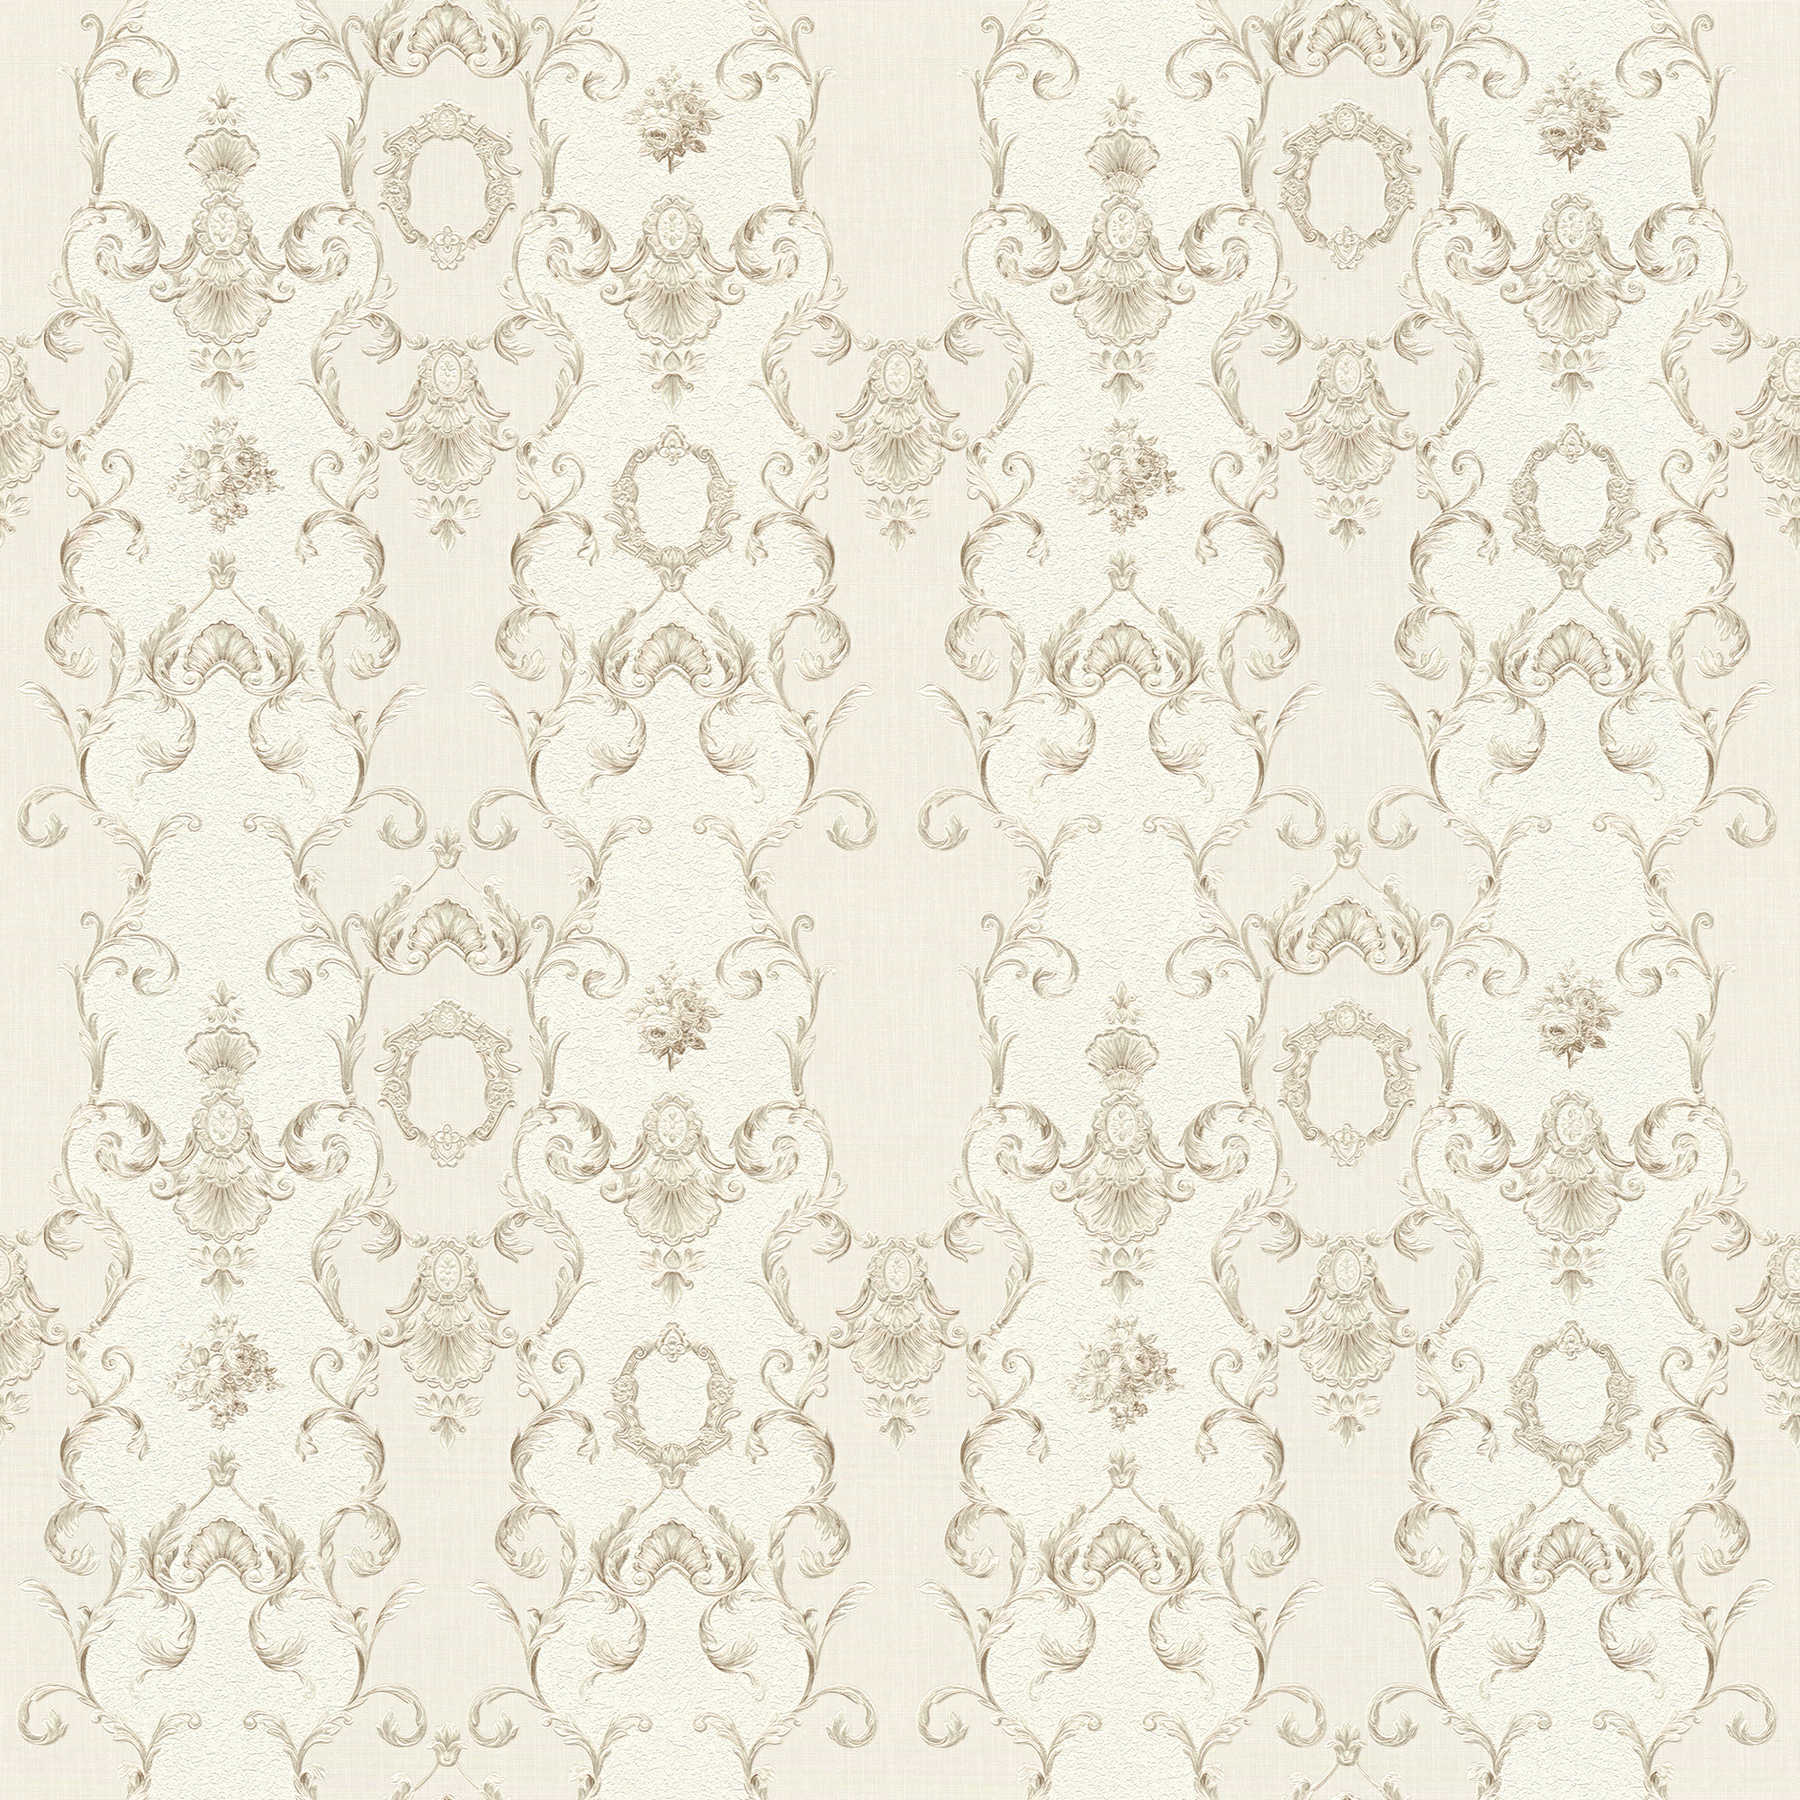 Neo baroque non-woven wallpaper with metallic decor - cream, metallic
